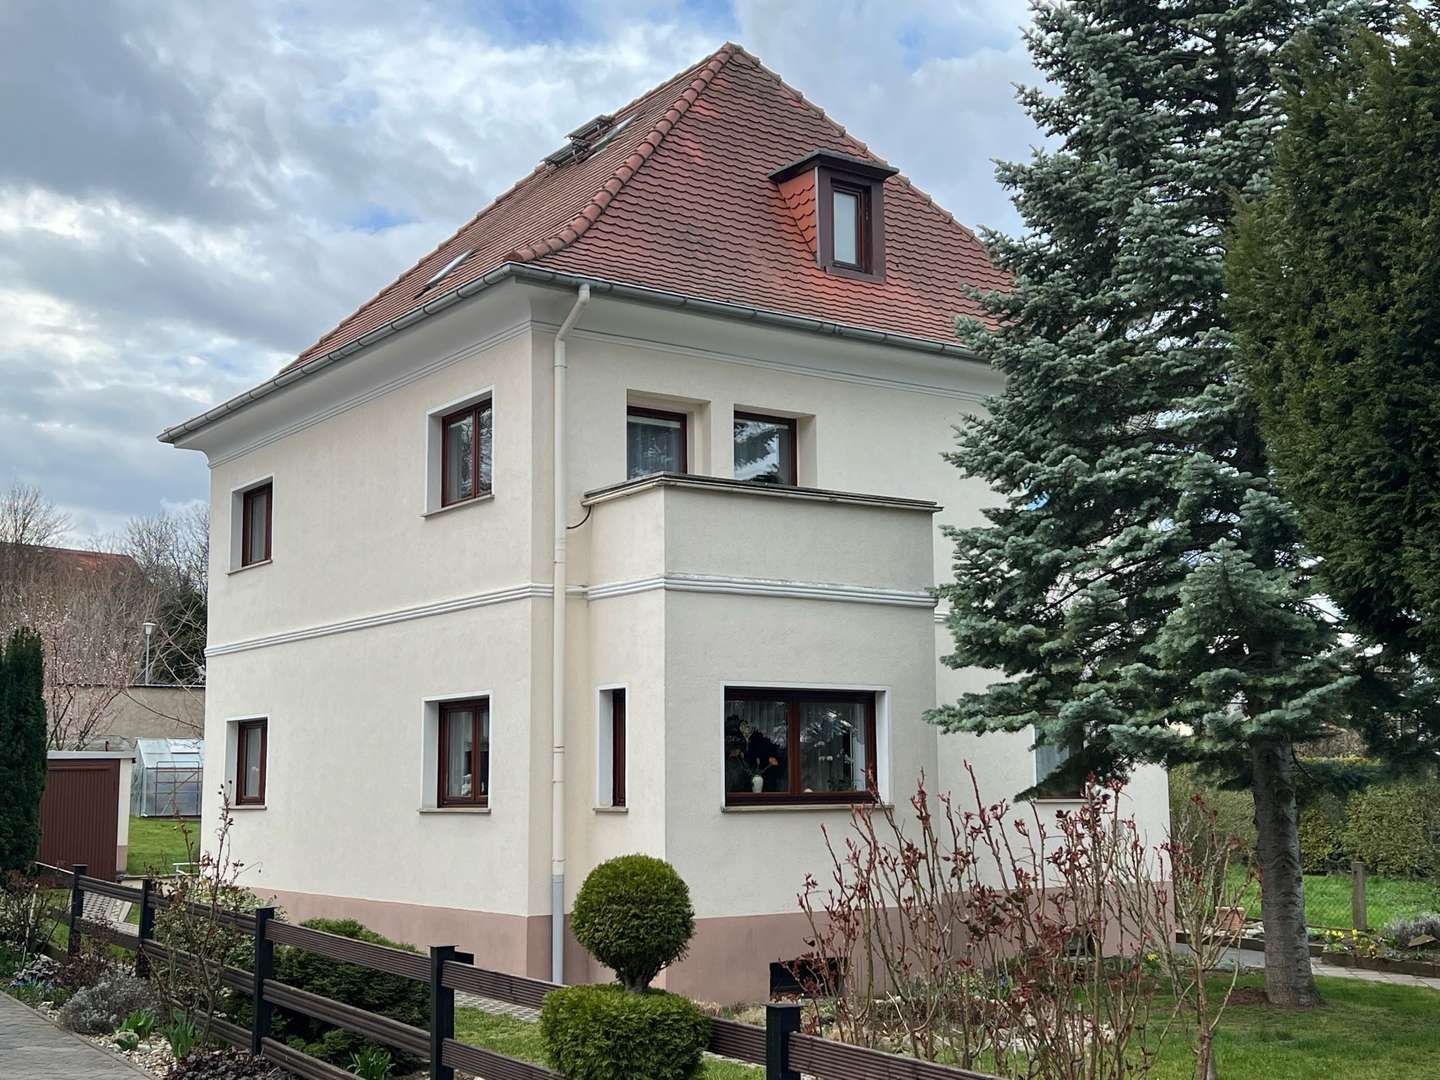 image1 (1) - Einfamilienhaus in 06295 Lutherstadt Eisleben mit 130m² kaufen